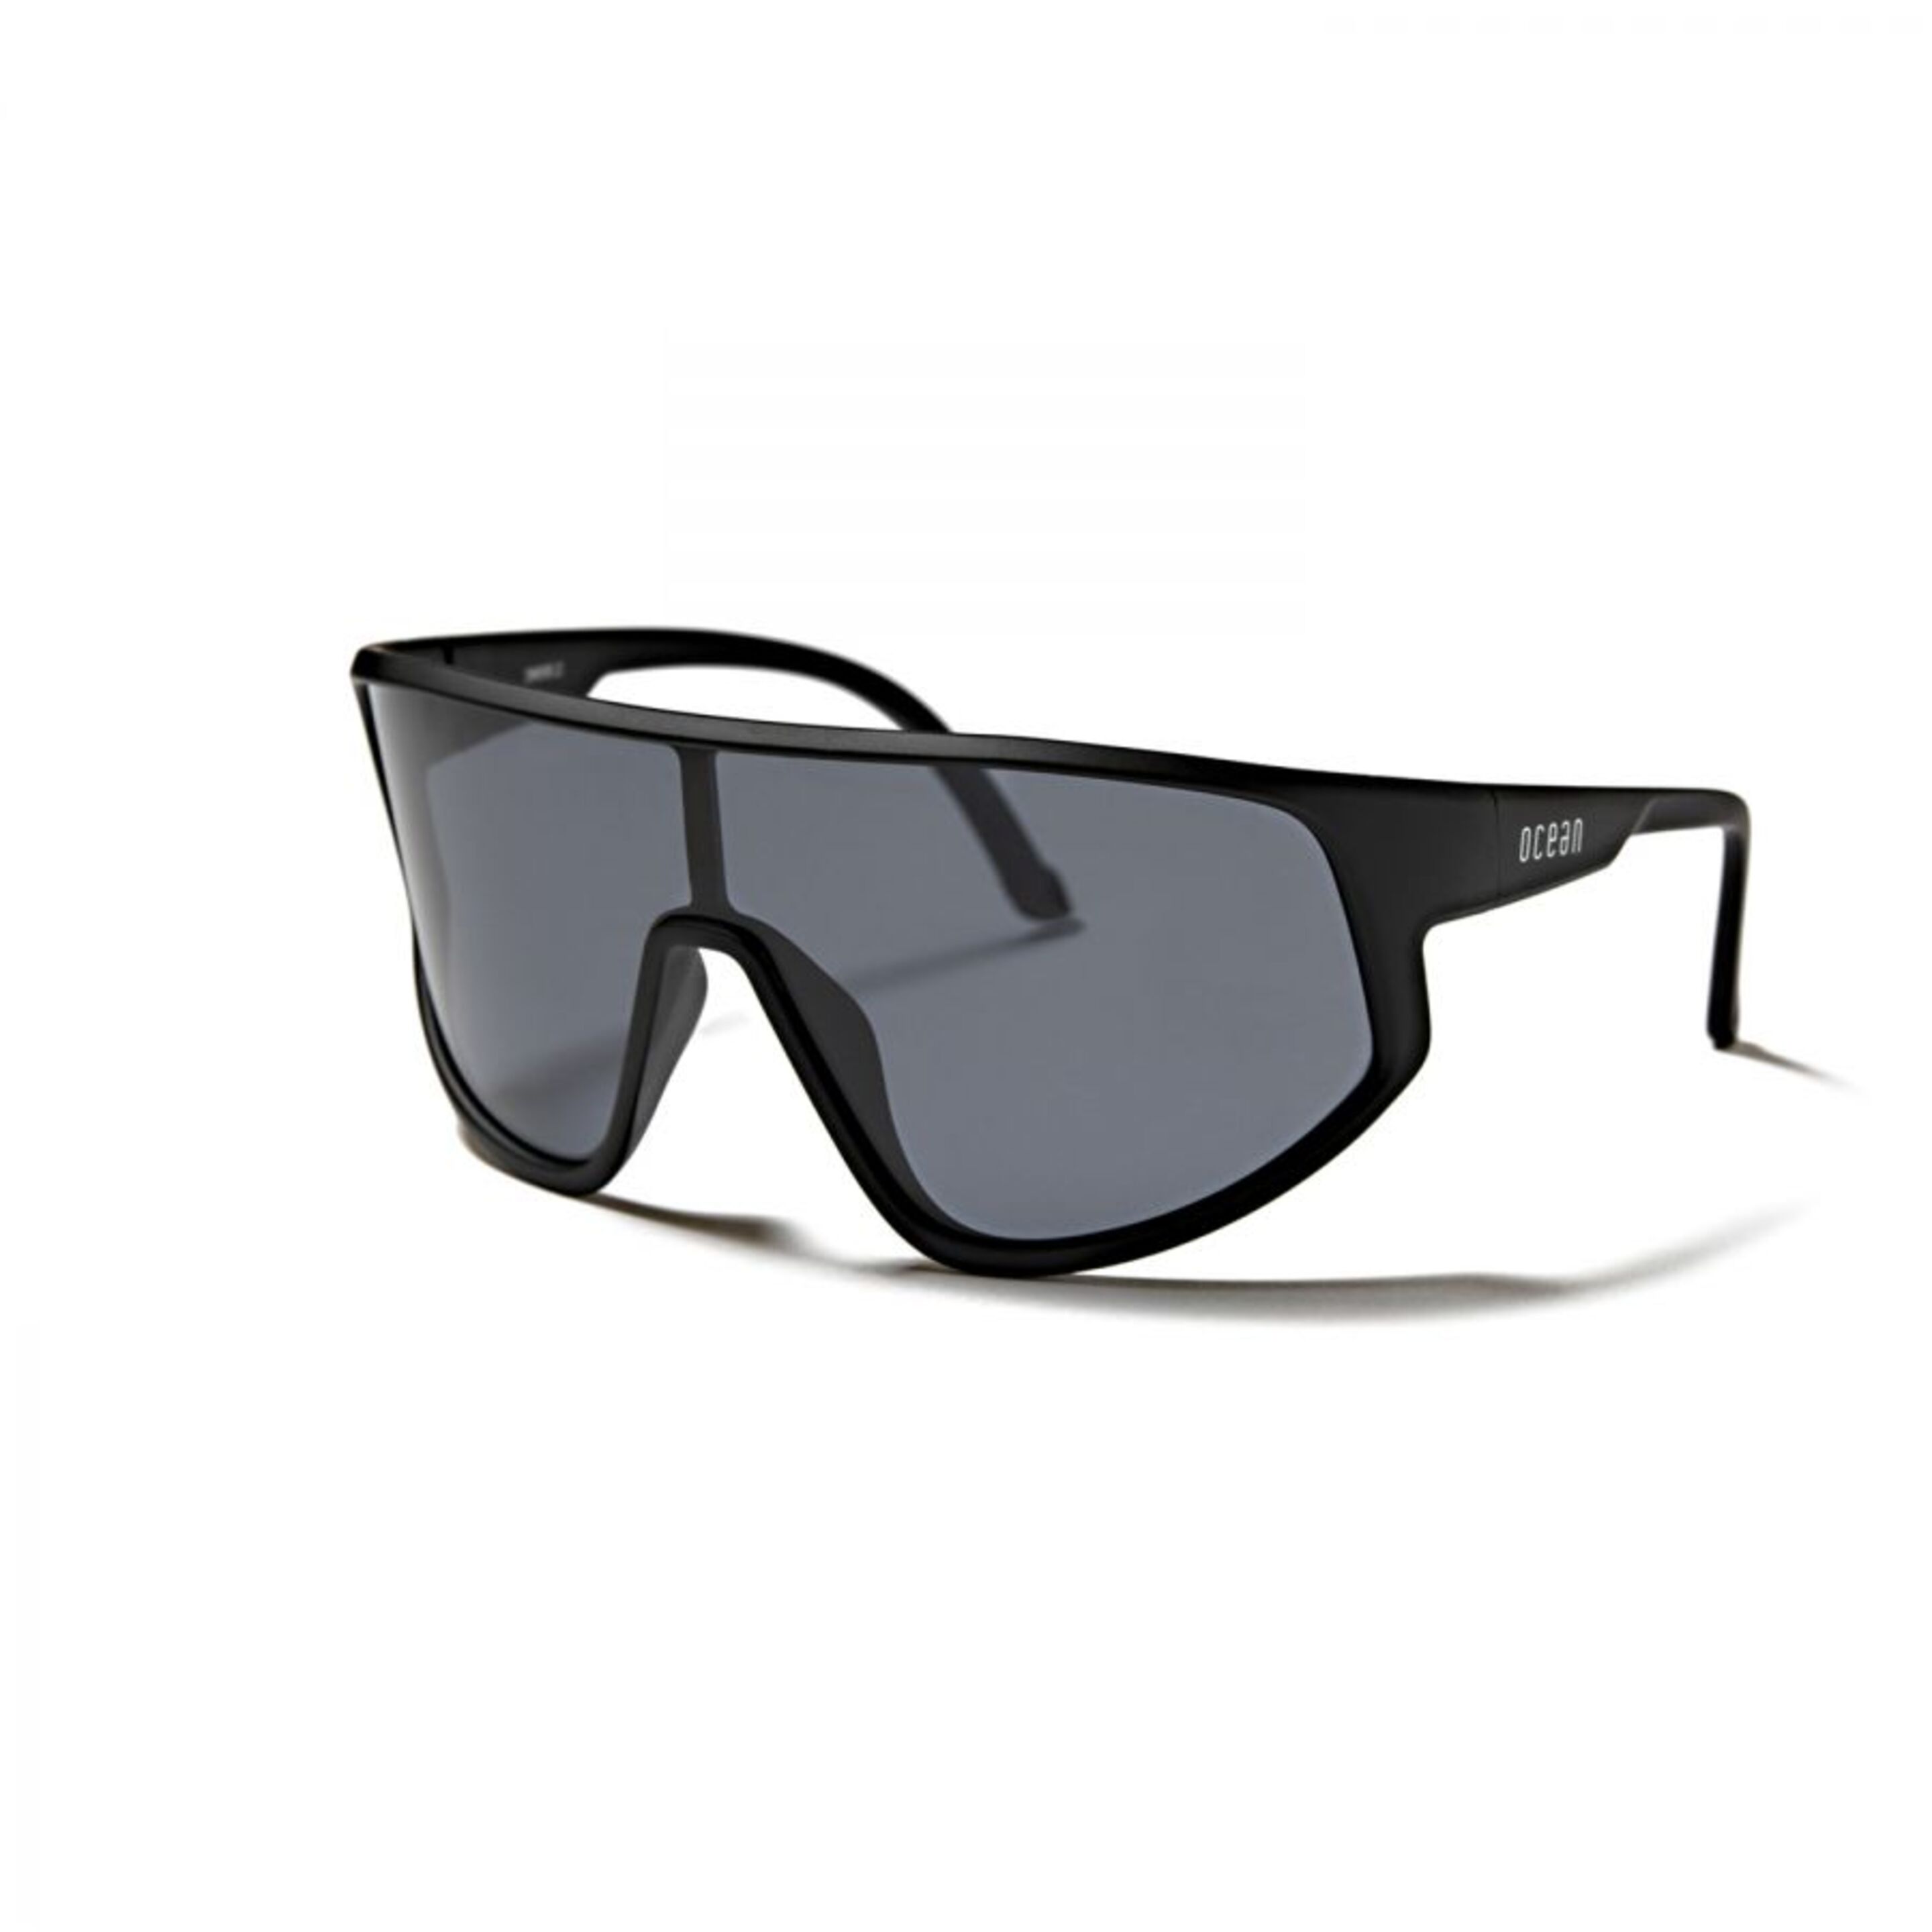 Gafas Deportivas Outdoor Ocean Sunglasses Killy - negro - 